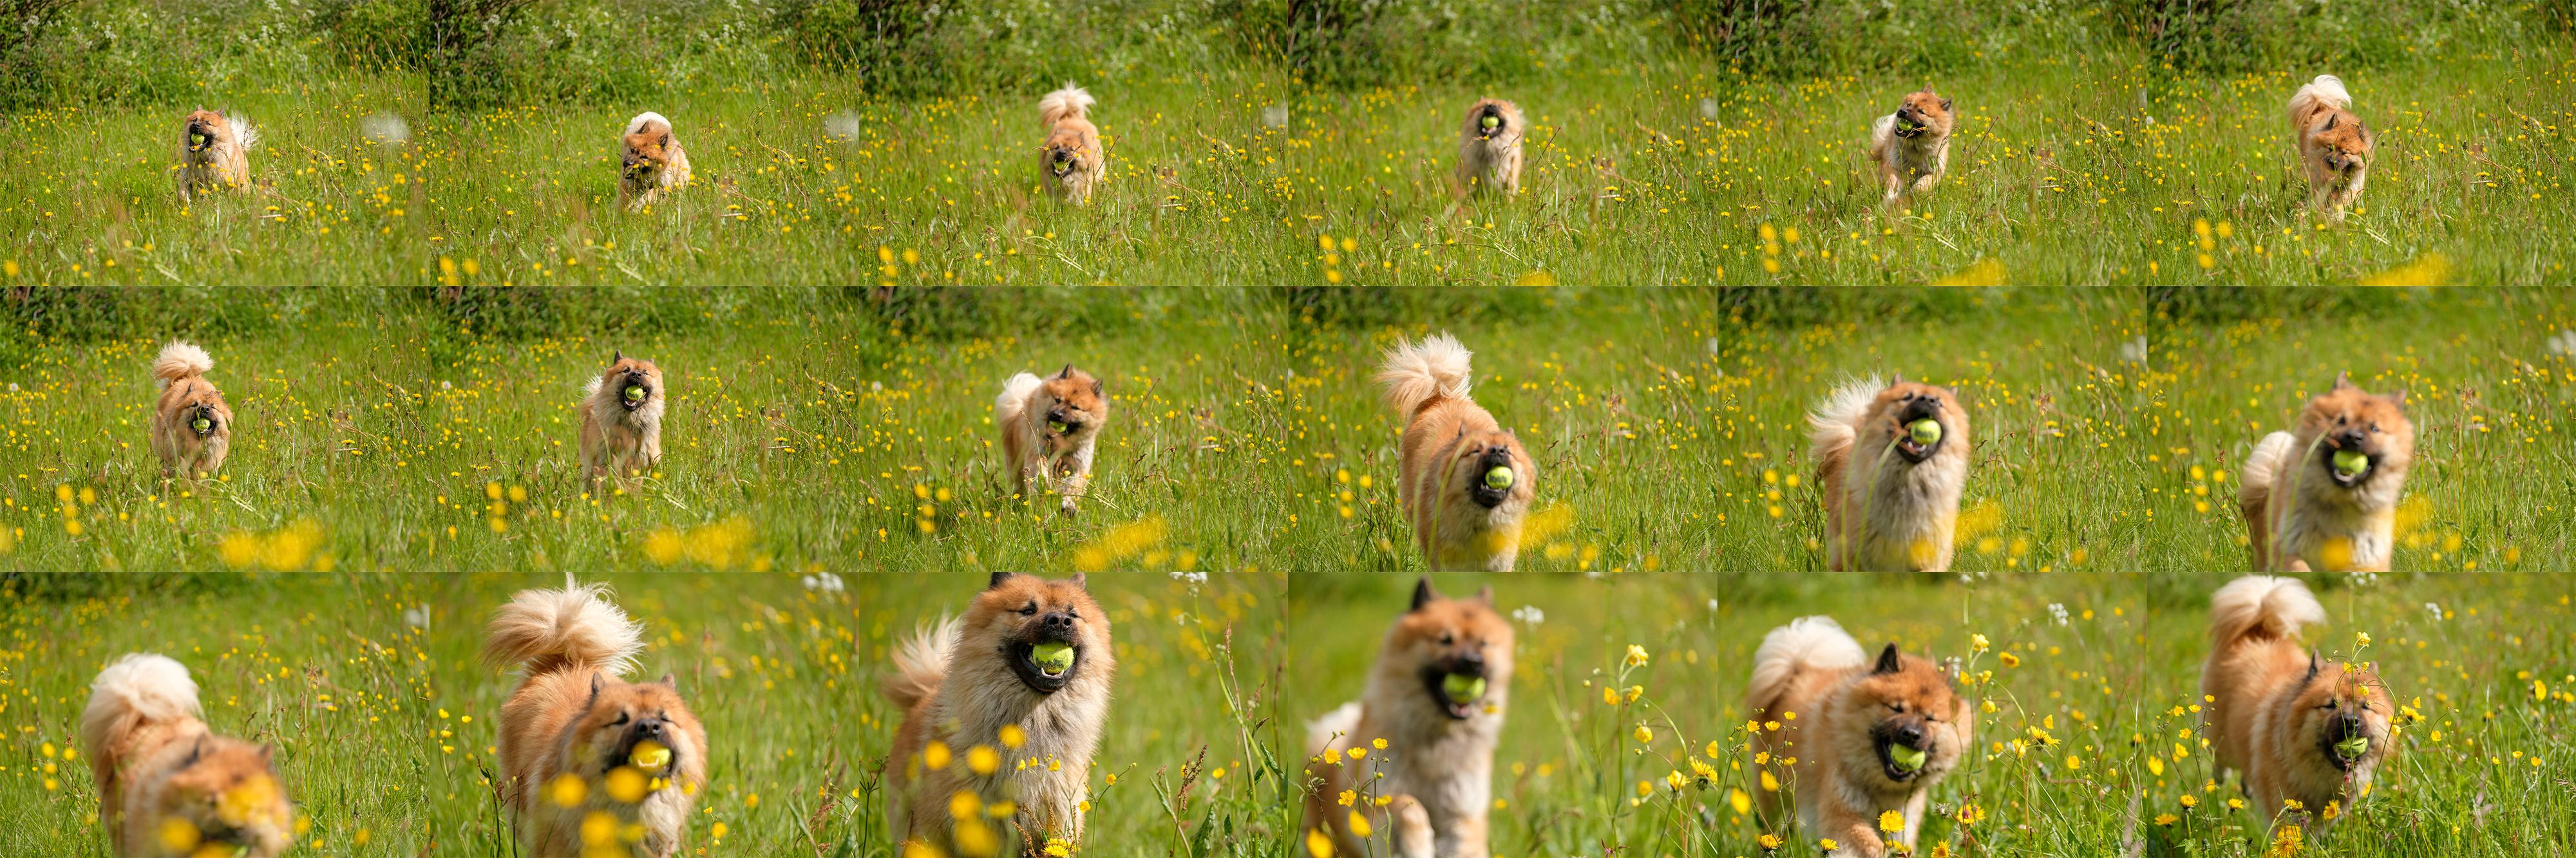 Når vi gjør den samme testen i høyt gress går kameraets treffprosent noe ned, særlig når det kommer blomster mellom fotografen og hunden, men vi synes likevel X-Pro2 klarer seg svært godt de vanskelige omgivelsene tatt i betraktning. 1/2000s - f2.8 - ISO 200. Optimalisert fra RAW og prosessert med Fujifilms kameraprofil «Provia/Standard»